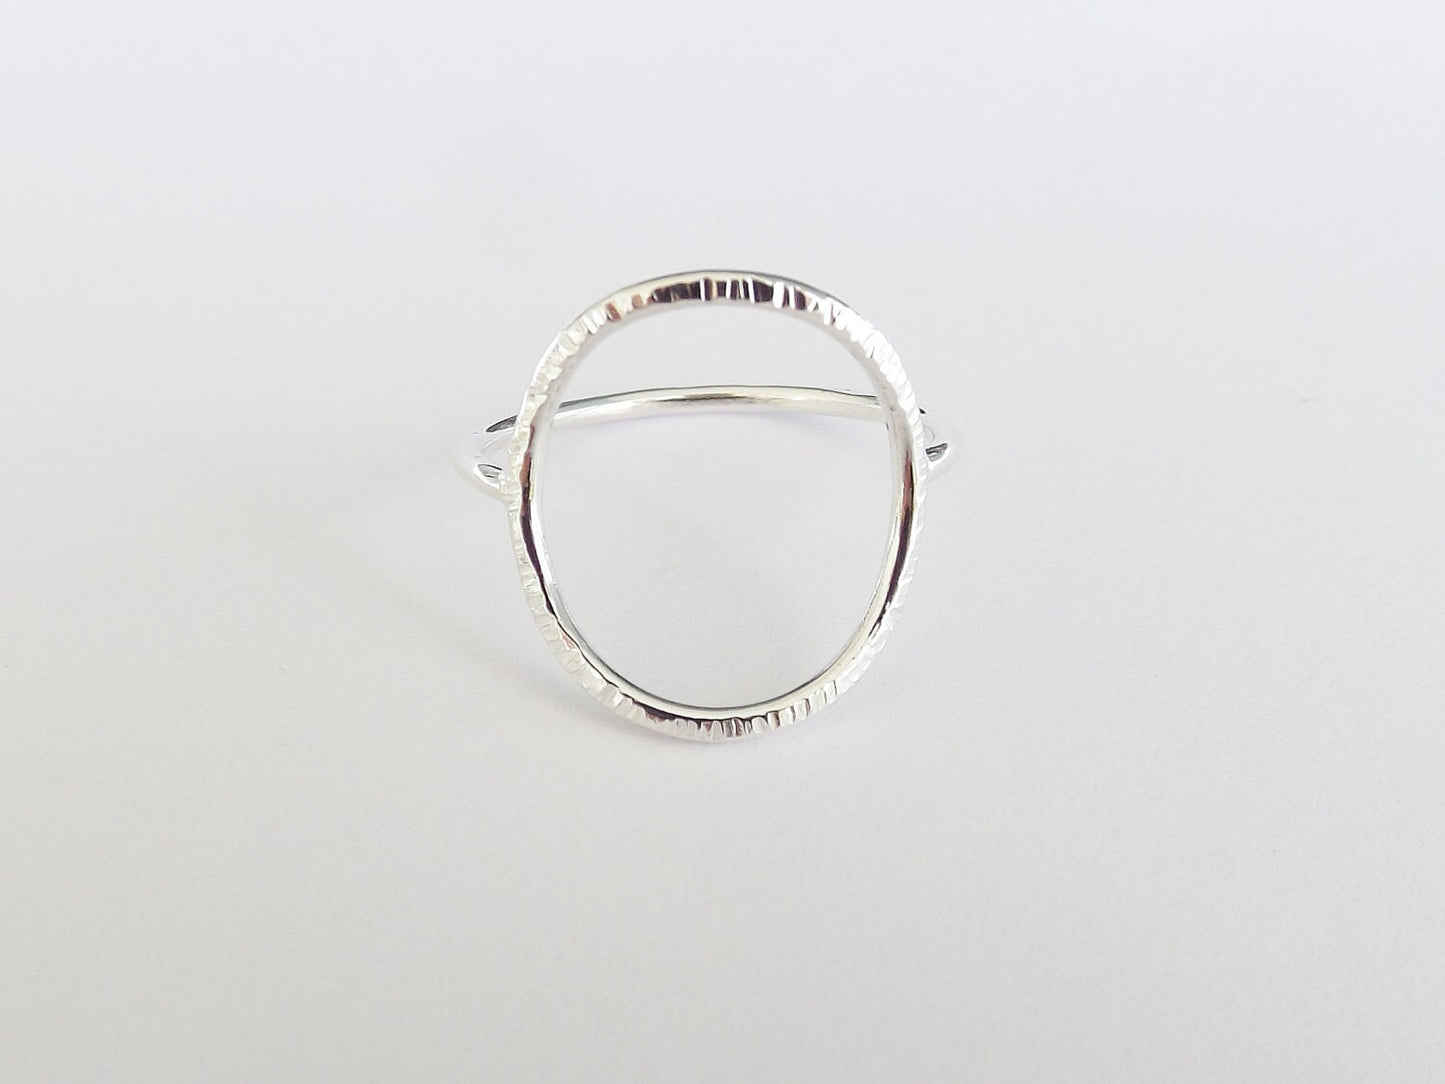 Large Circle Ring,Stacking Rings,Eternity Rings,Silver/Gold Circle Rings,Simple Modern Rings,Karma Circle Ring,Minimalist Jewelry,Karma Ring